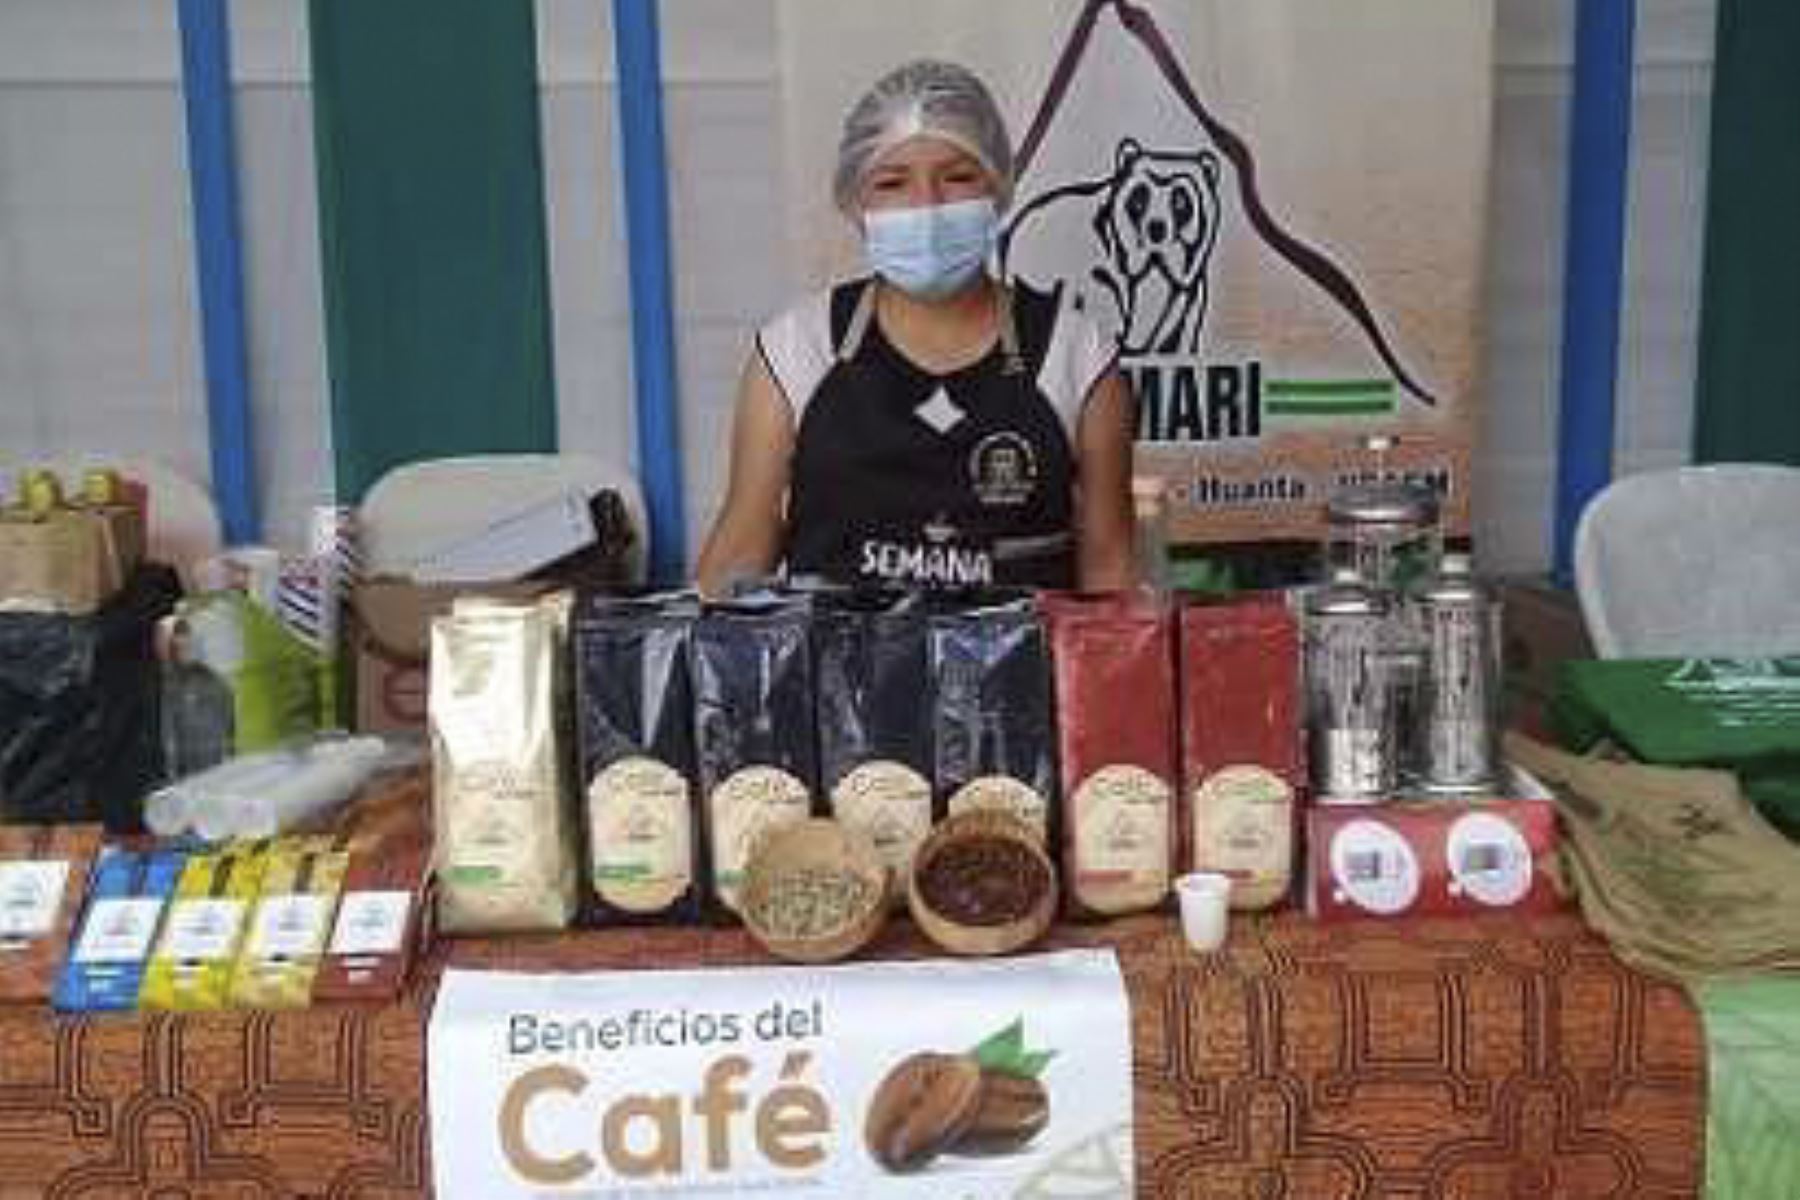 La ayacuchana Liz Sarayda Ramirez Quispe está transformando la historia de su comunidad y el café fue su gran inspiración. Foto: ANDINA/DifusiónANDINA/Difusión